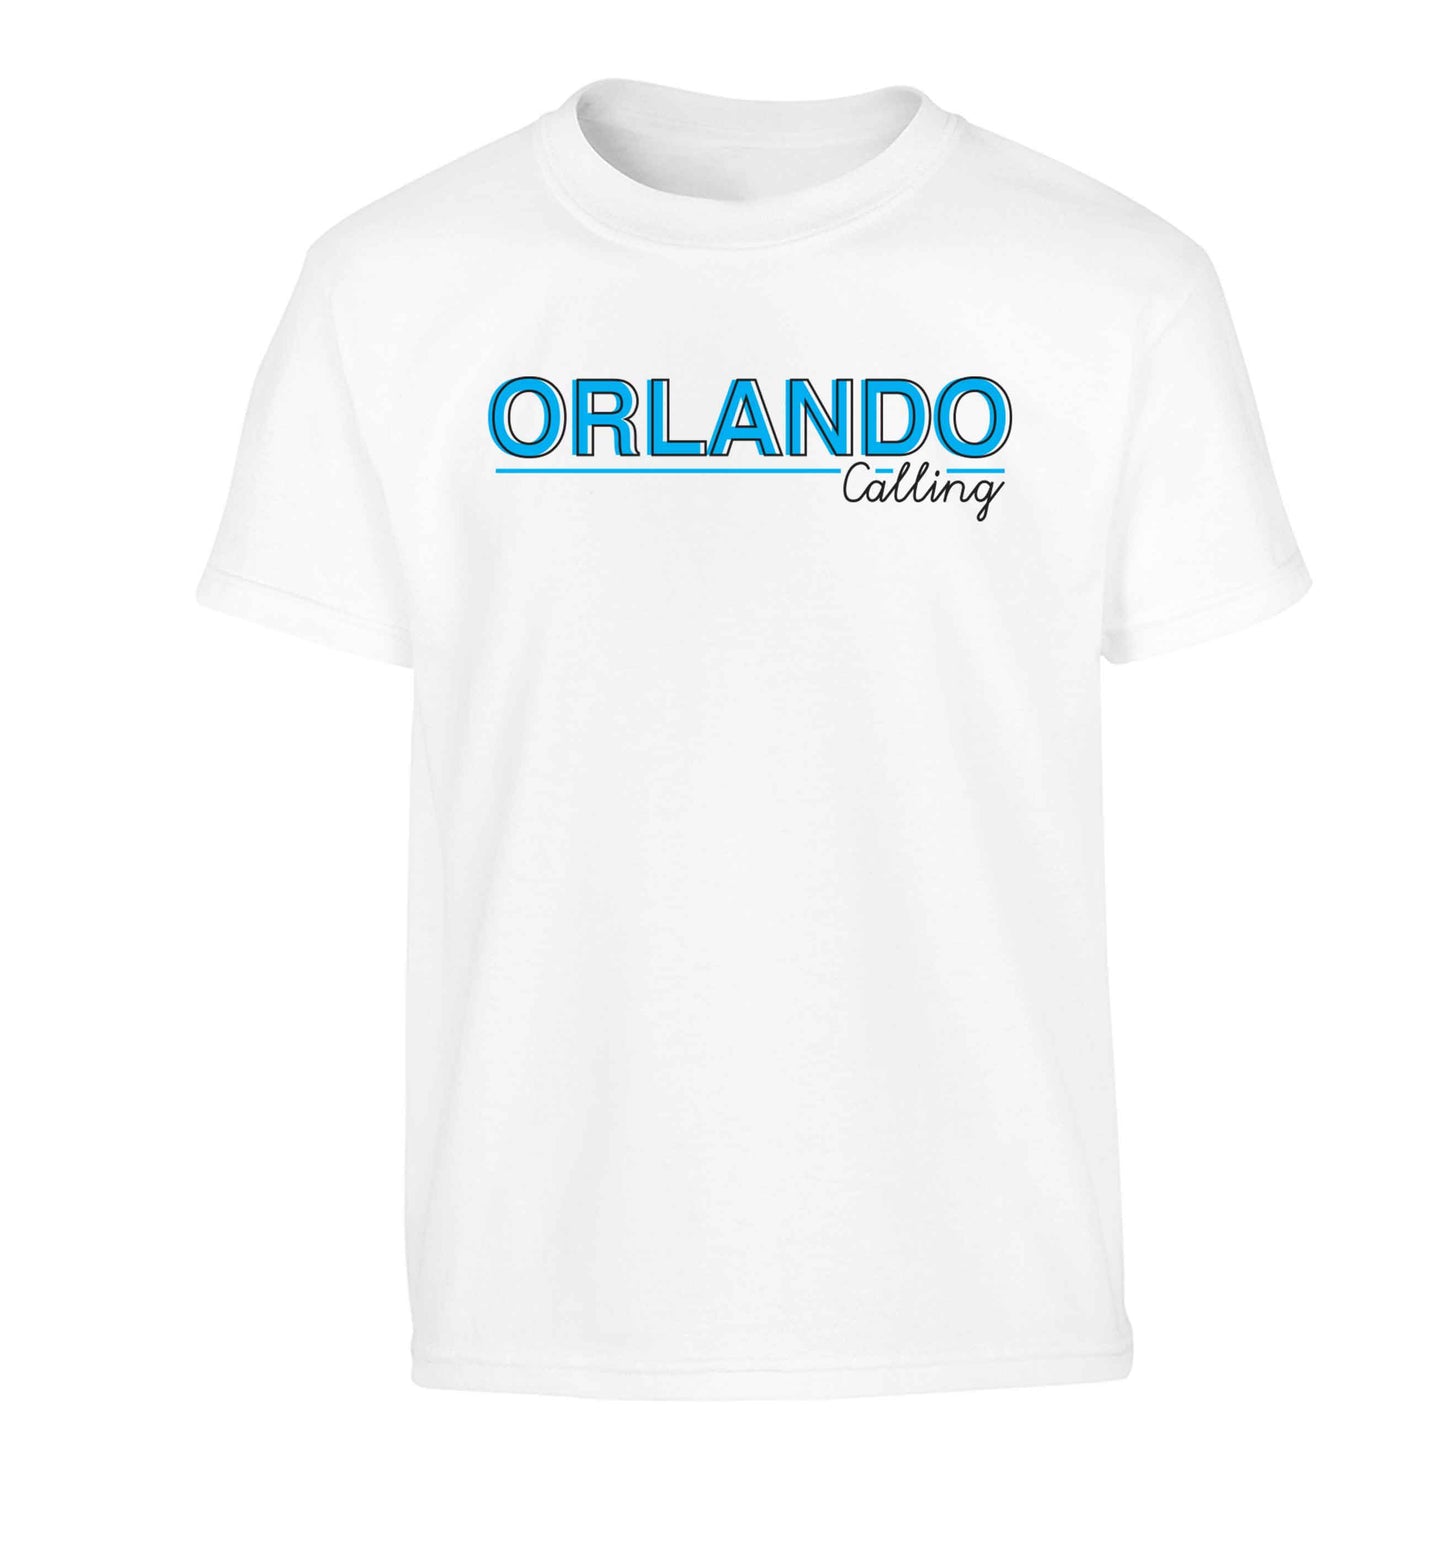 Orlando calling Children's white Tshirt 12-13 Years